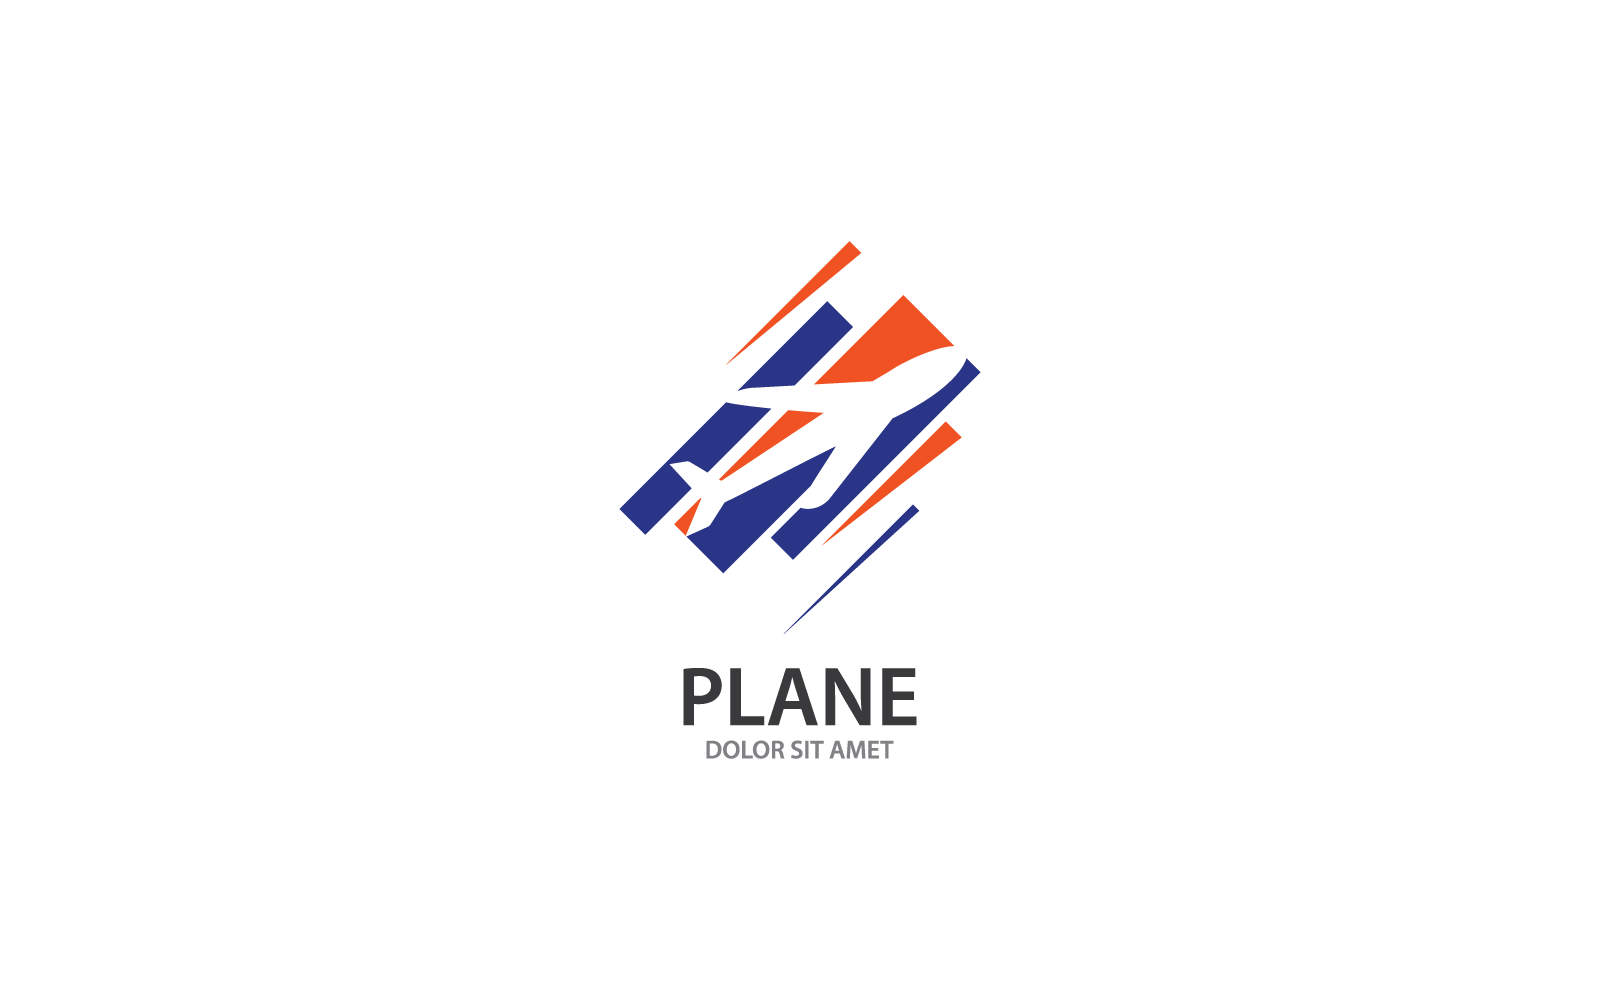 Plane Travel logo vector icon template